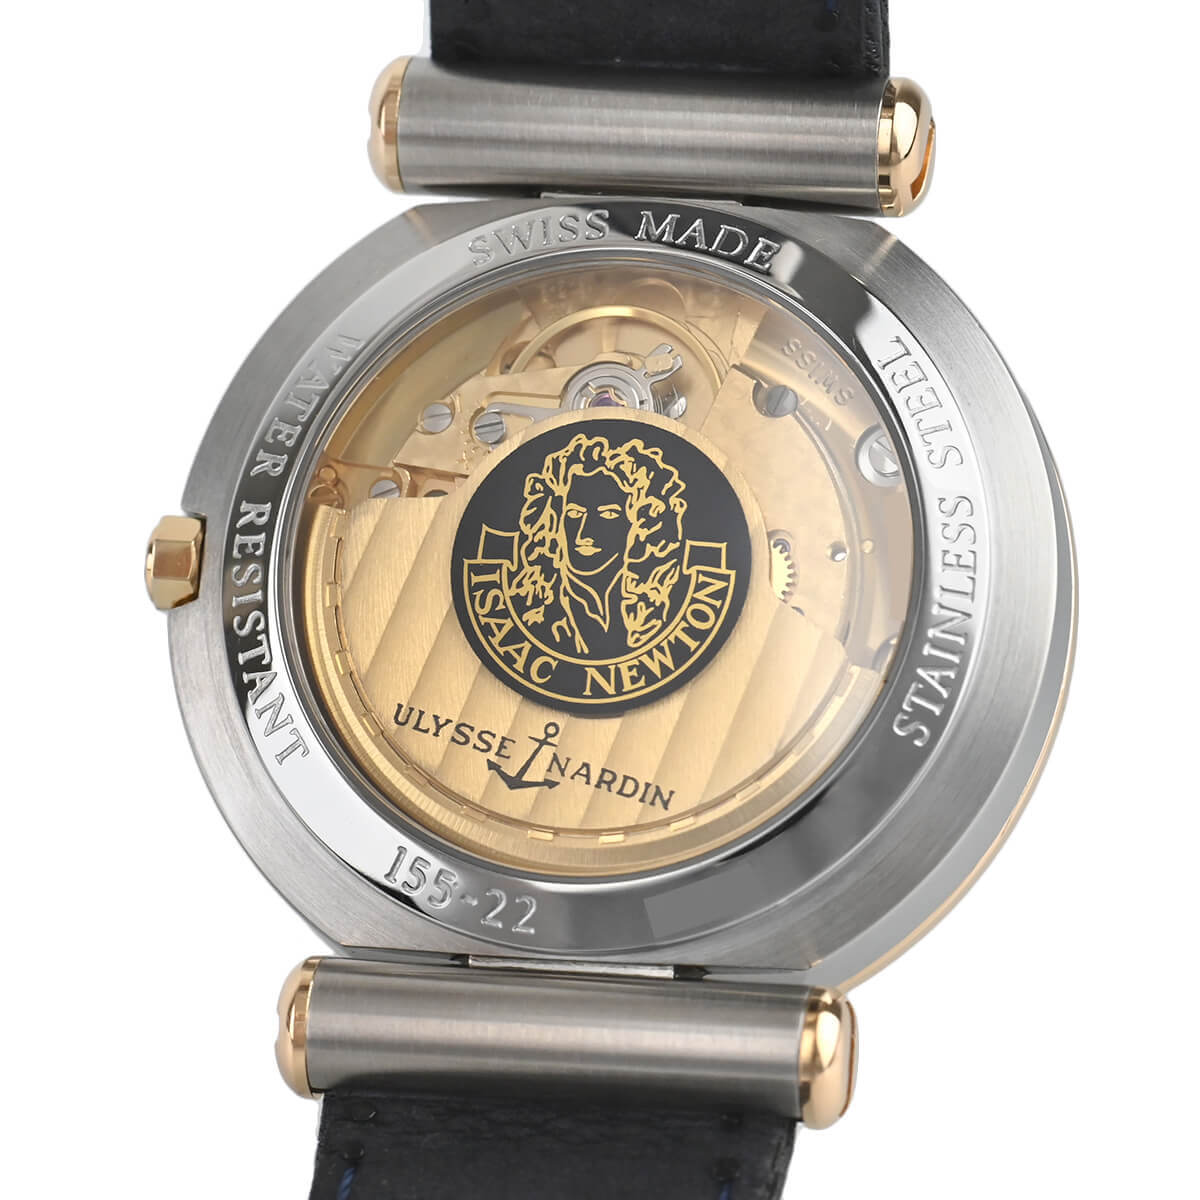 ユリス・ナルダン ニュートン 腕時計 時計 ステンレススチール 155-22 自動巻き メンズ 1年保証 Ulysse Nardin